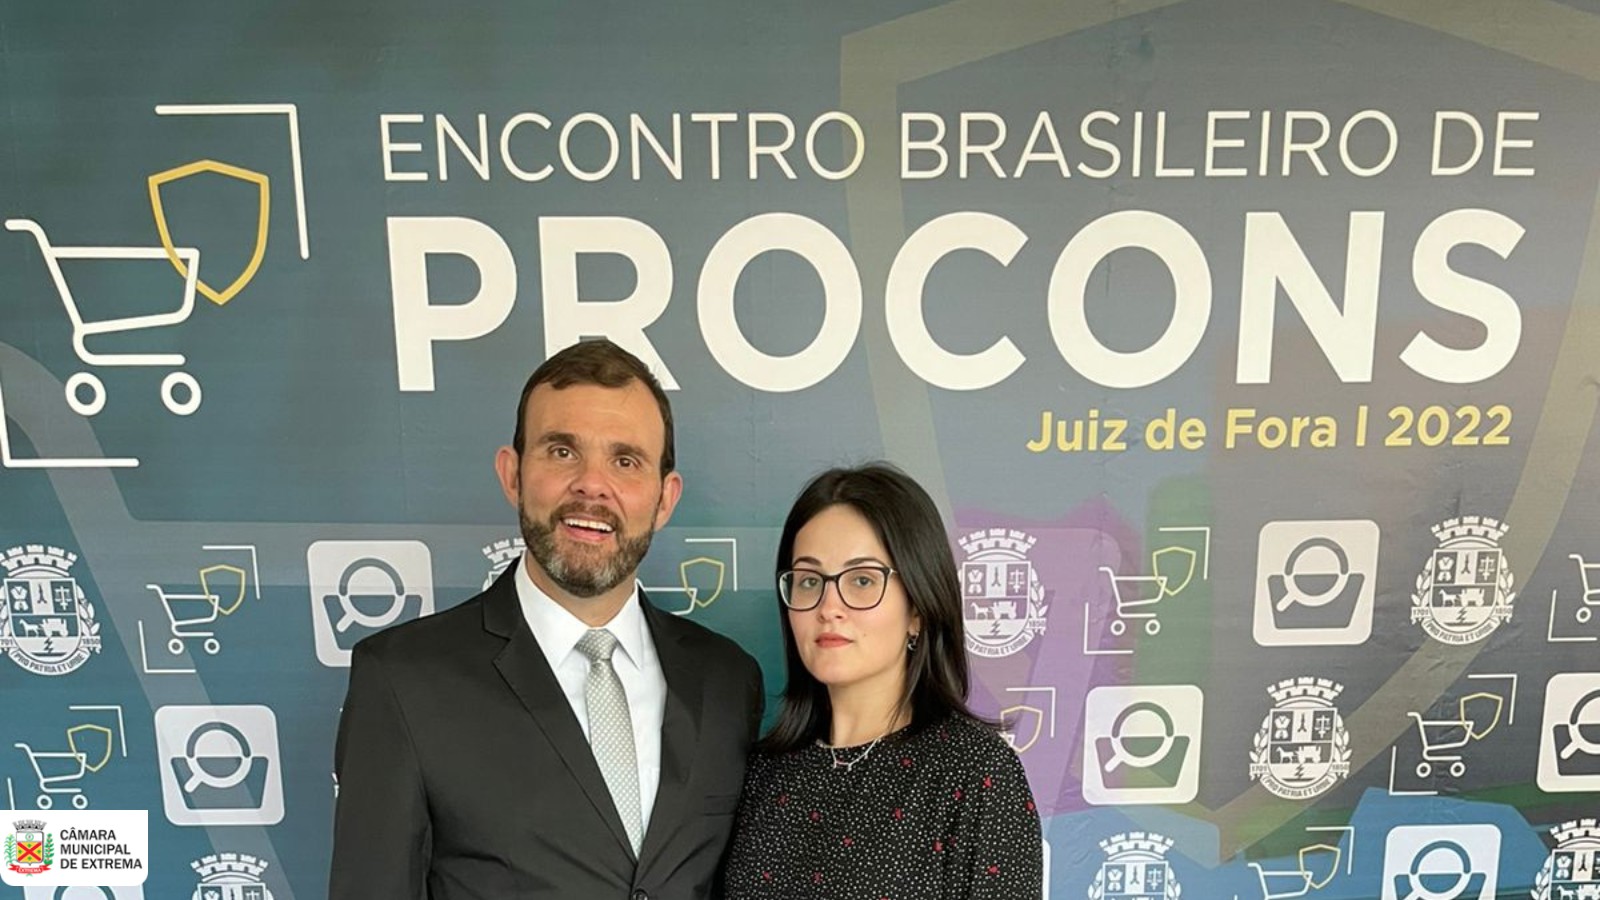 Procon marca presença no ‘Encontro Brasileiro de Procons’ em Juiz de Fora/MG